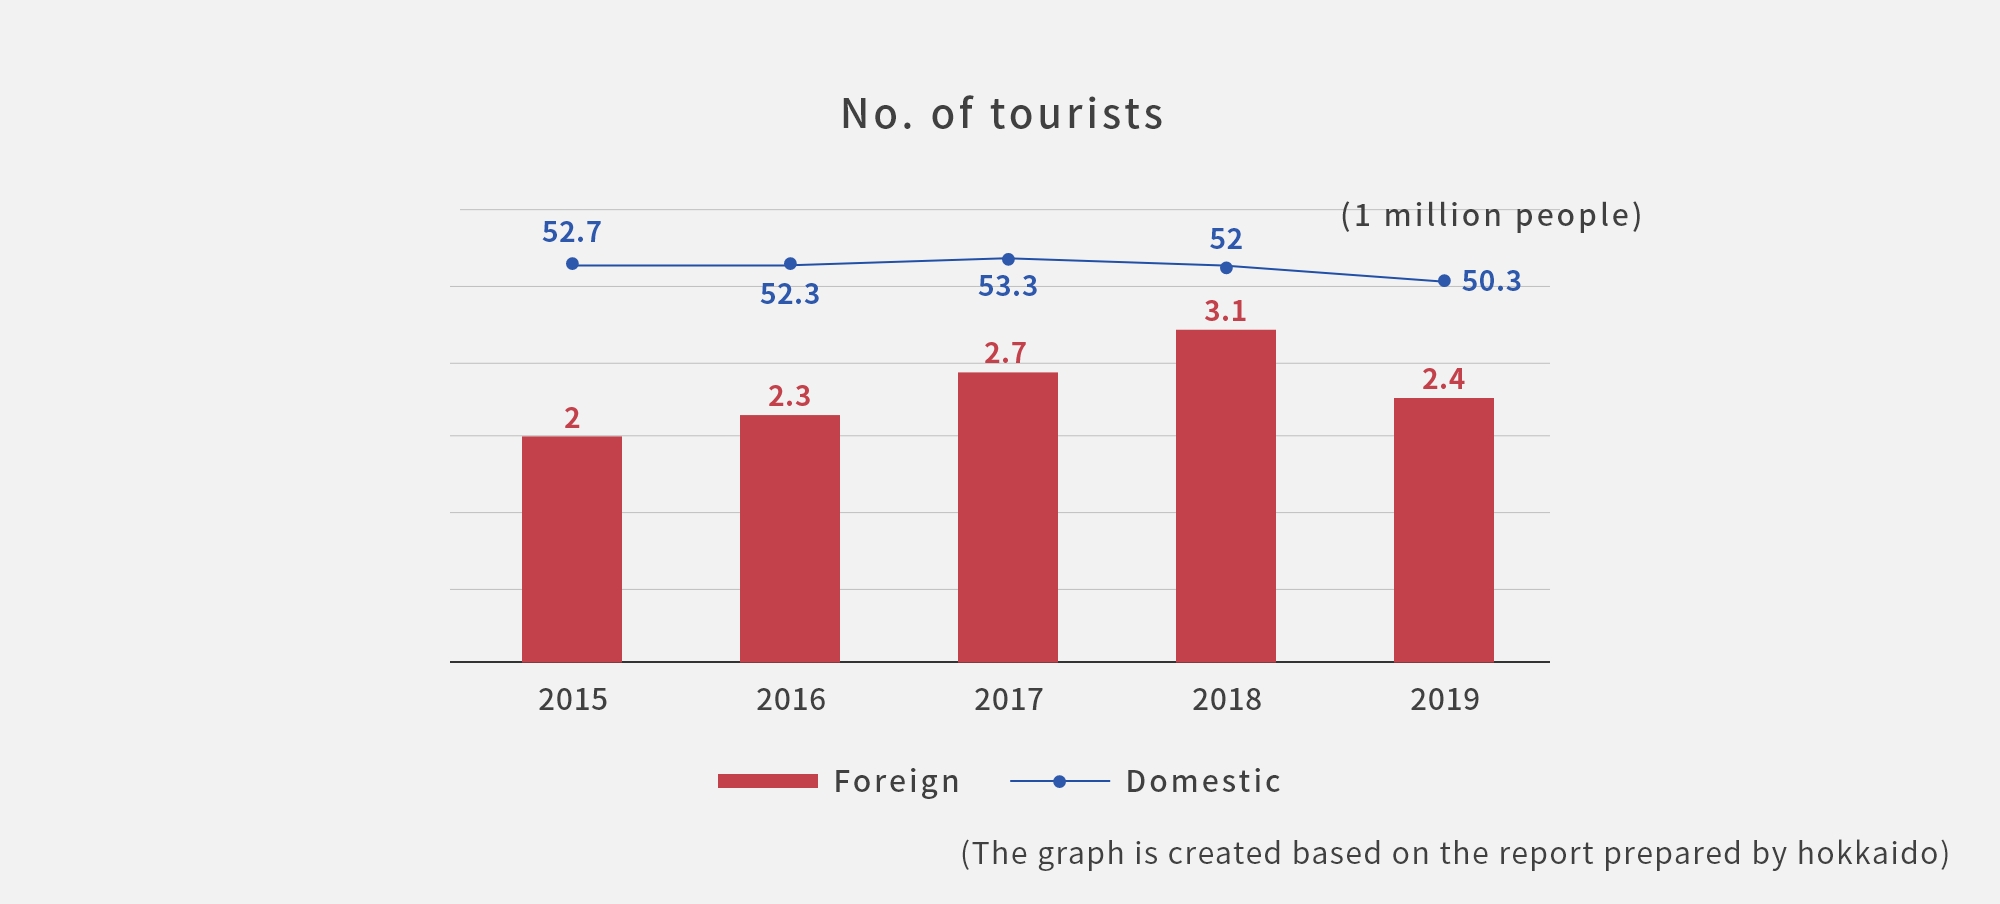 国内および海外からの旅行者数